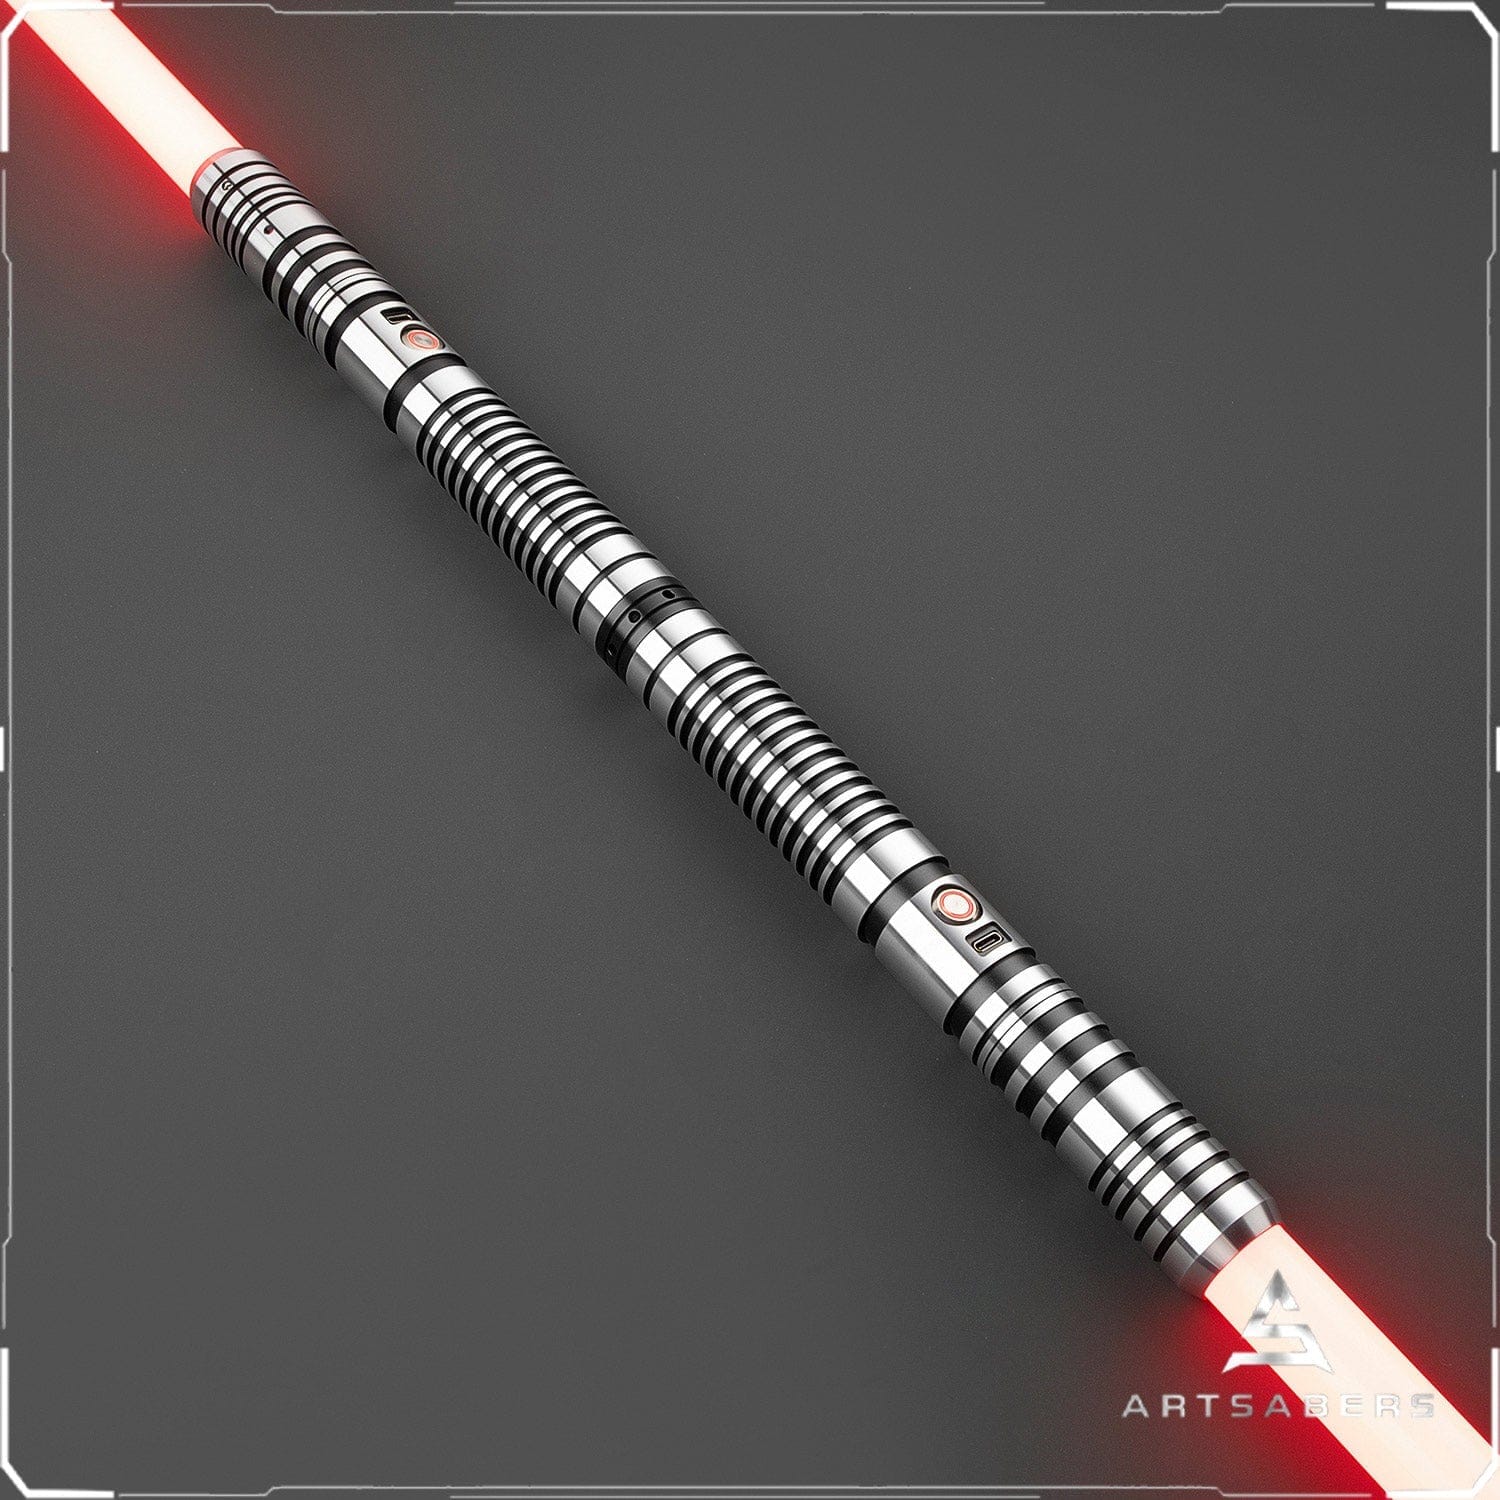 Black ARRIO V2 Double Bladed saber Star Wars saber ARTSABERS